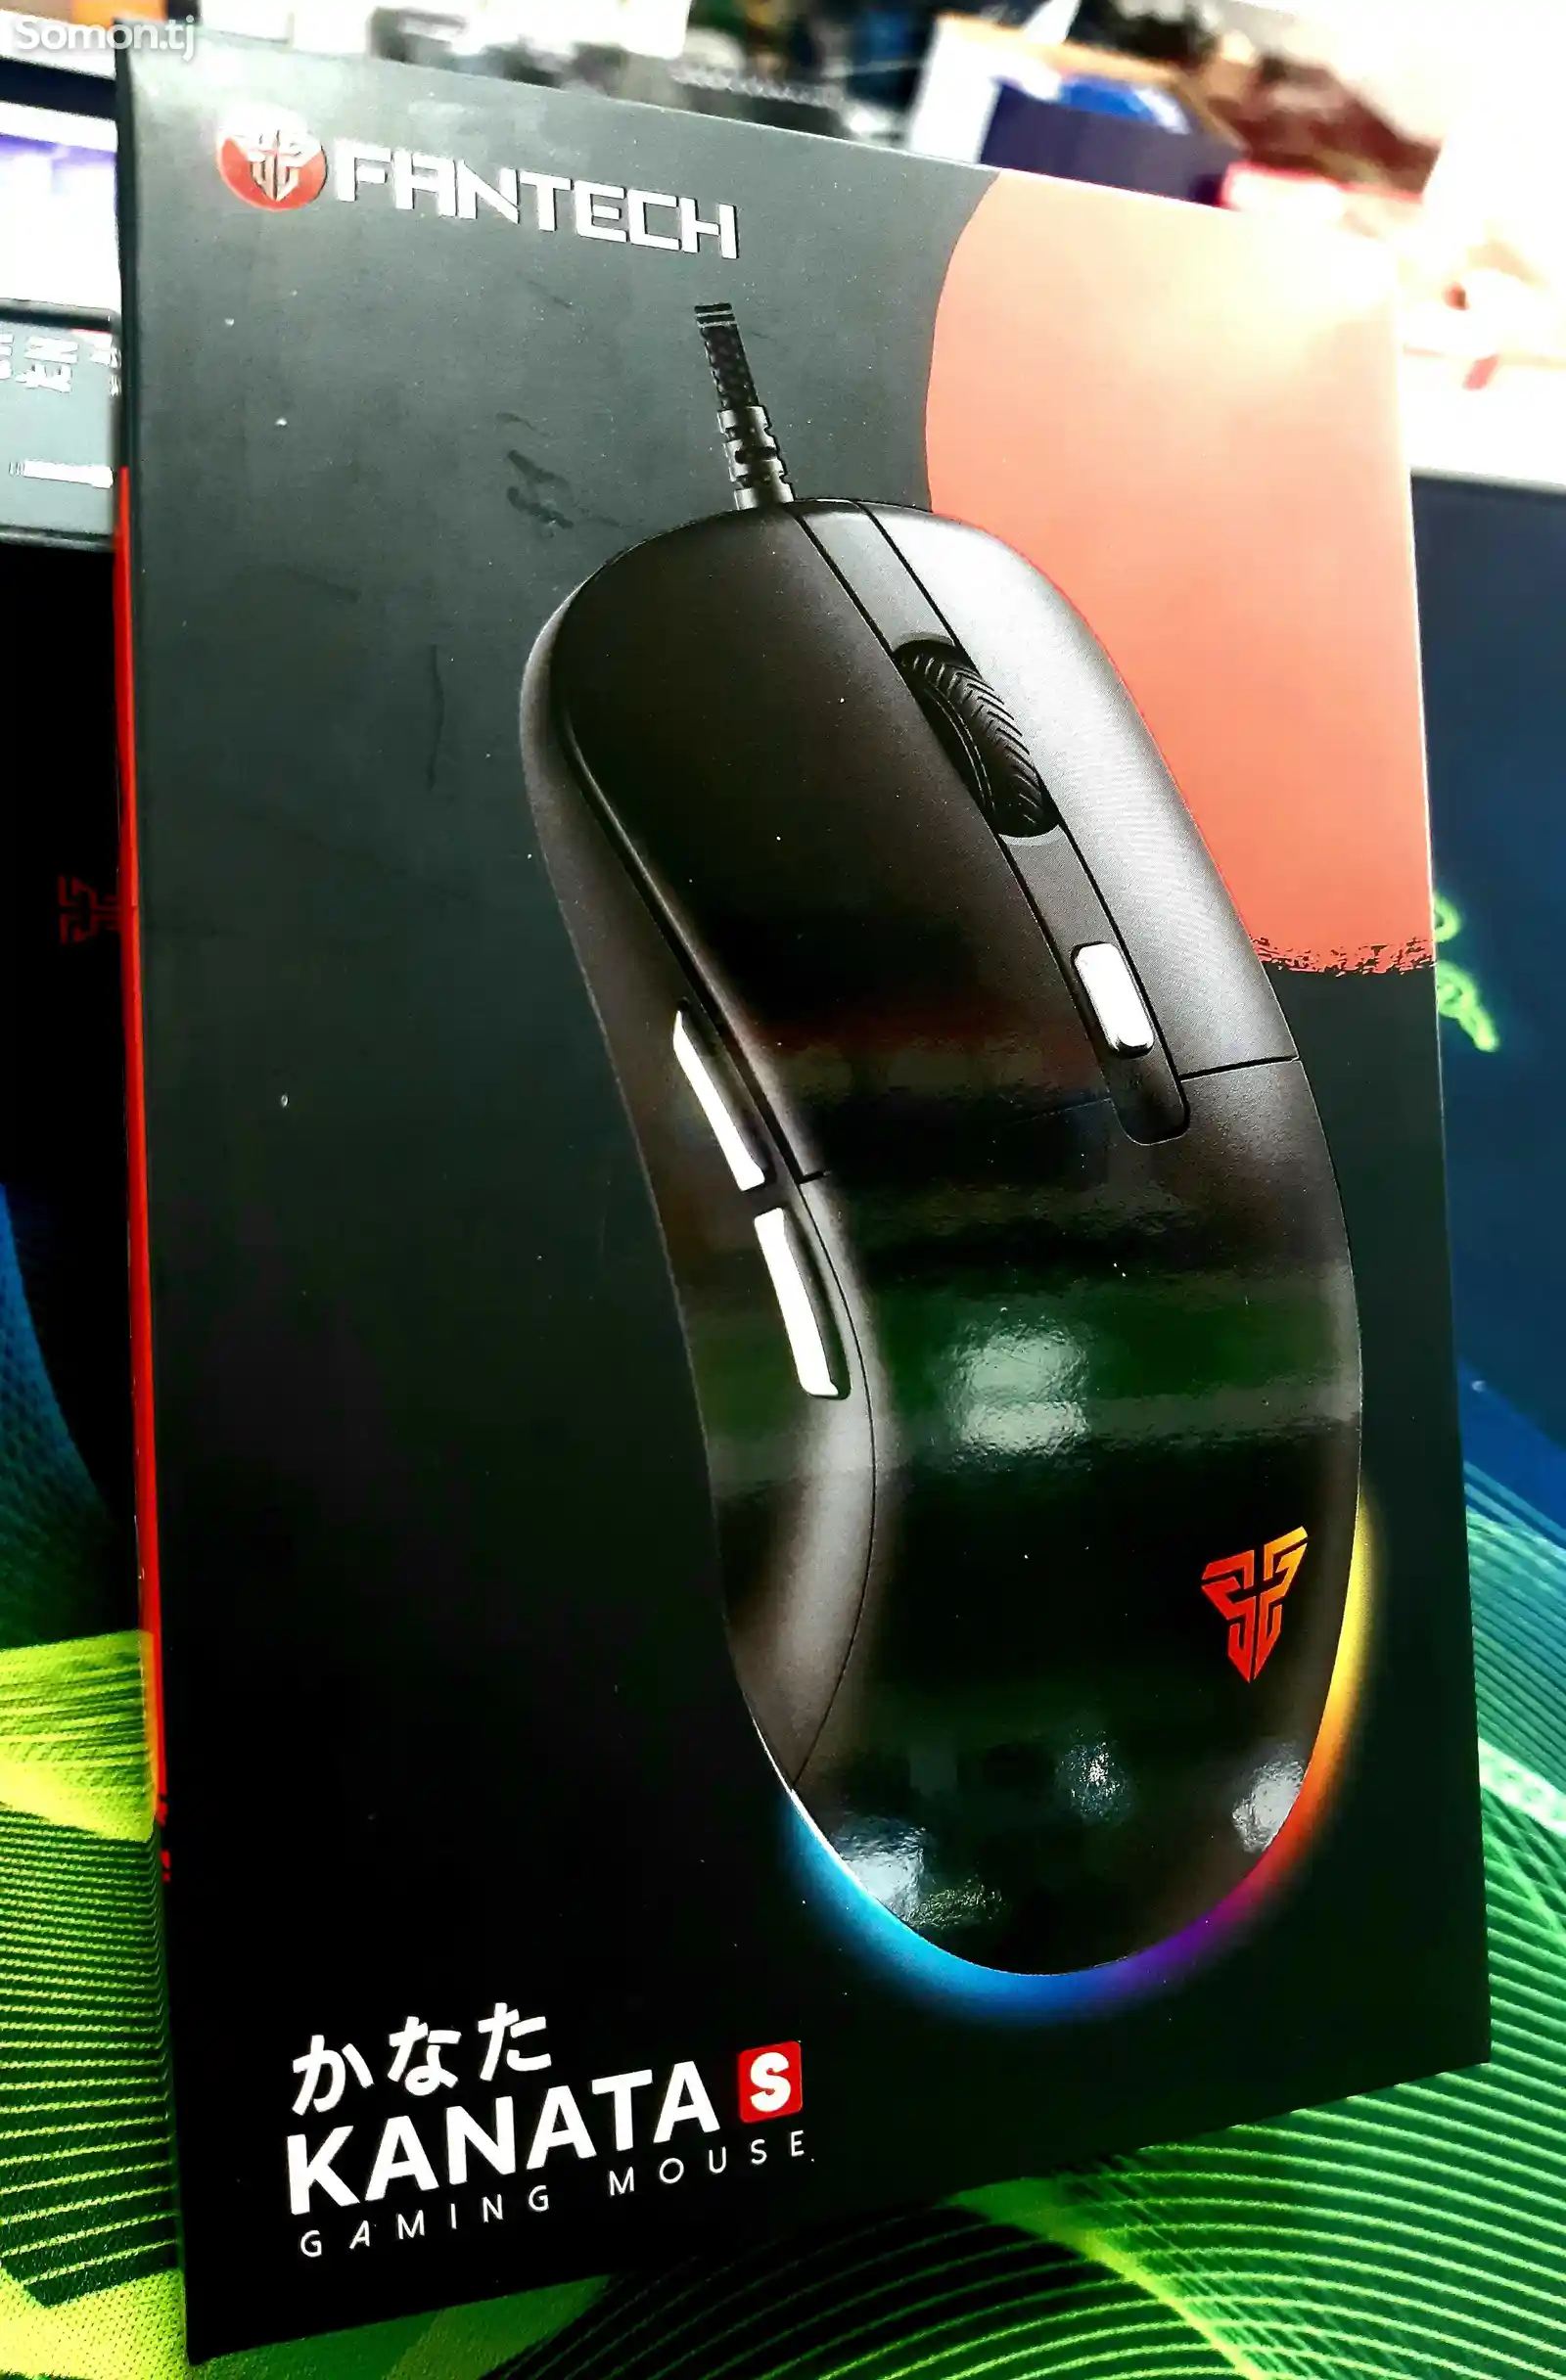 Мышь Fantech Gaming Mouse VX9s-4